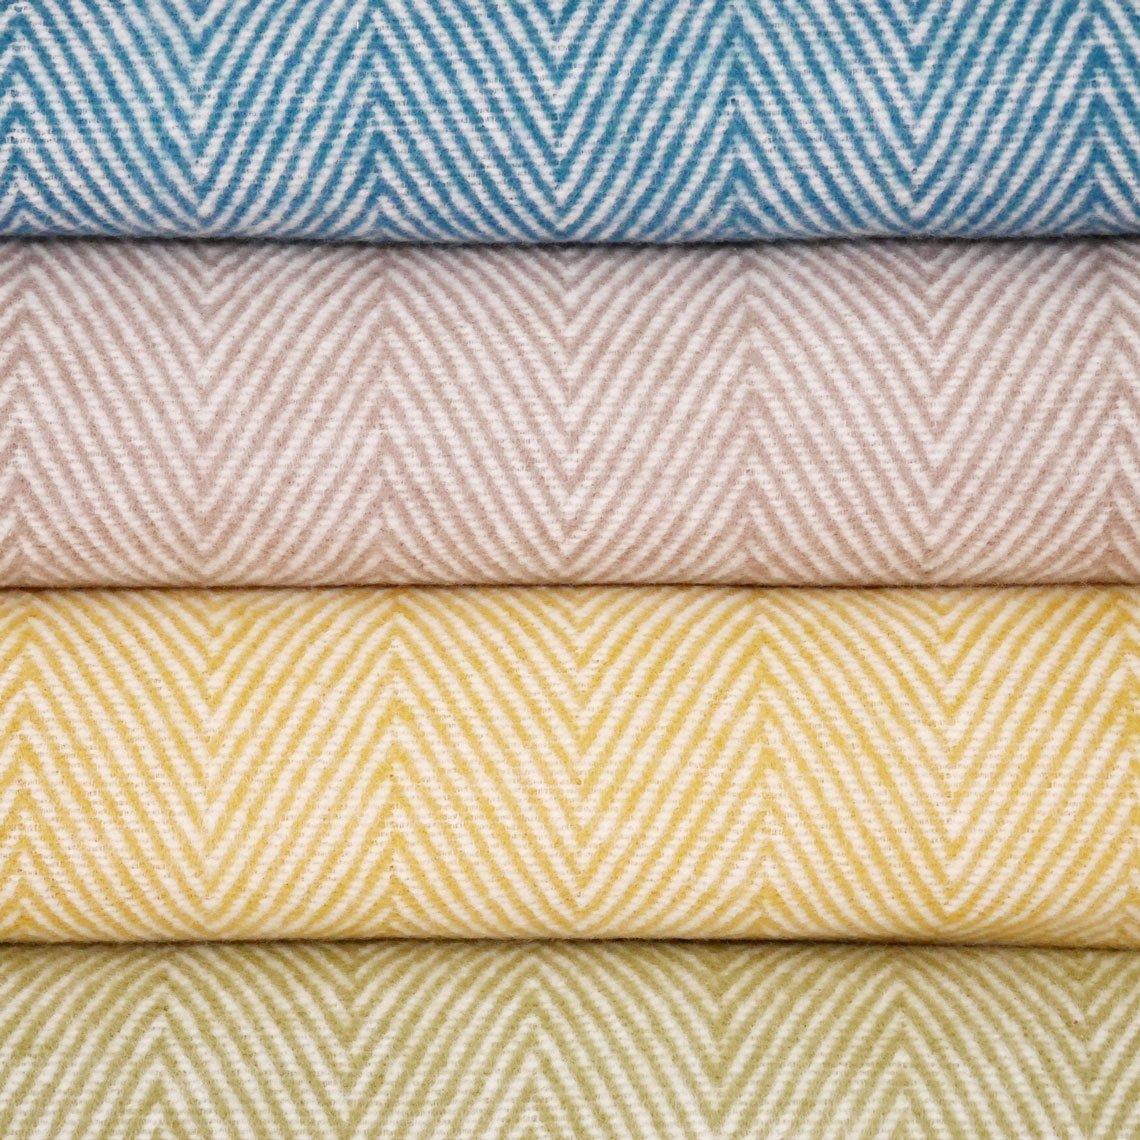 Baumwolldecken in vier verschiedenen Farben übereinandergelegt